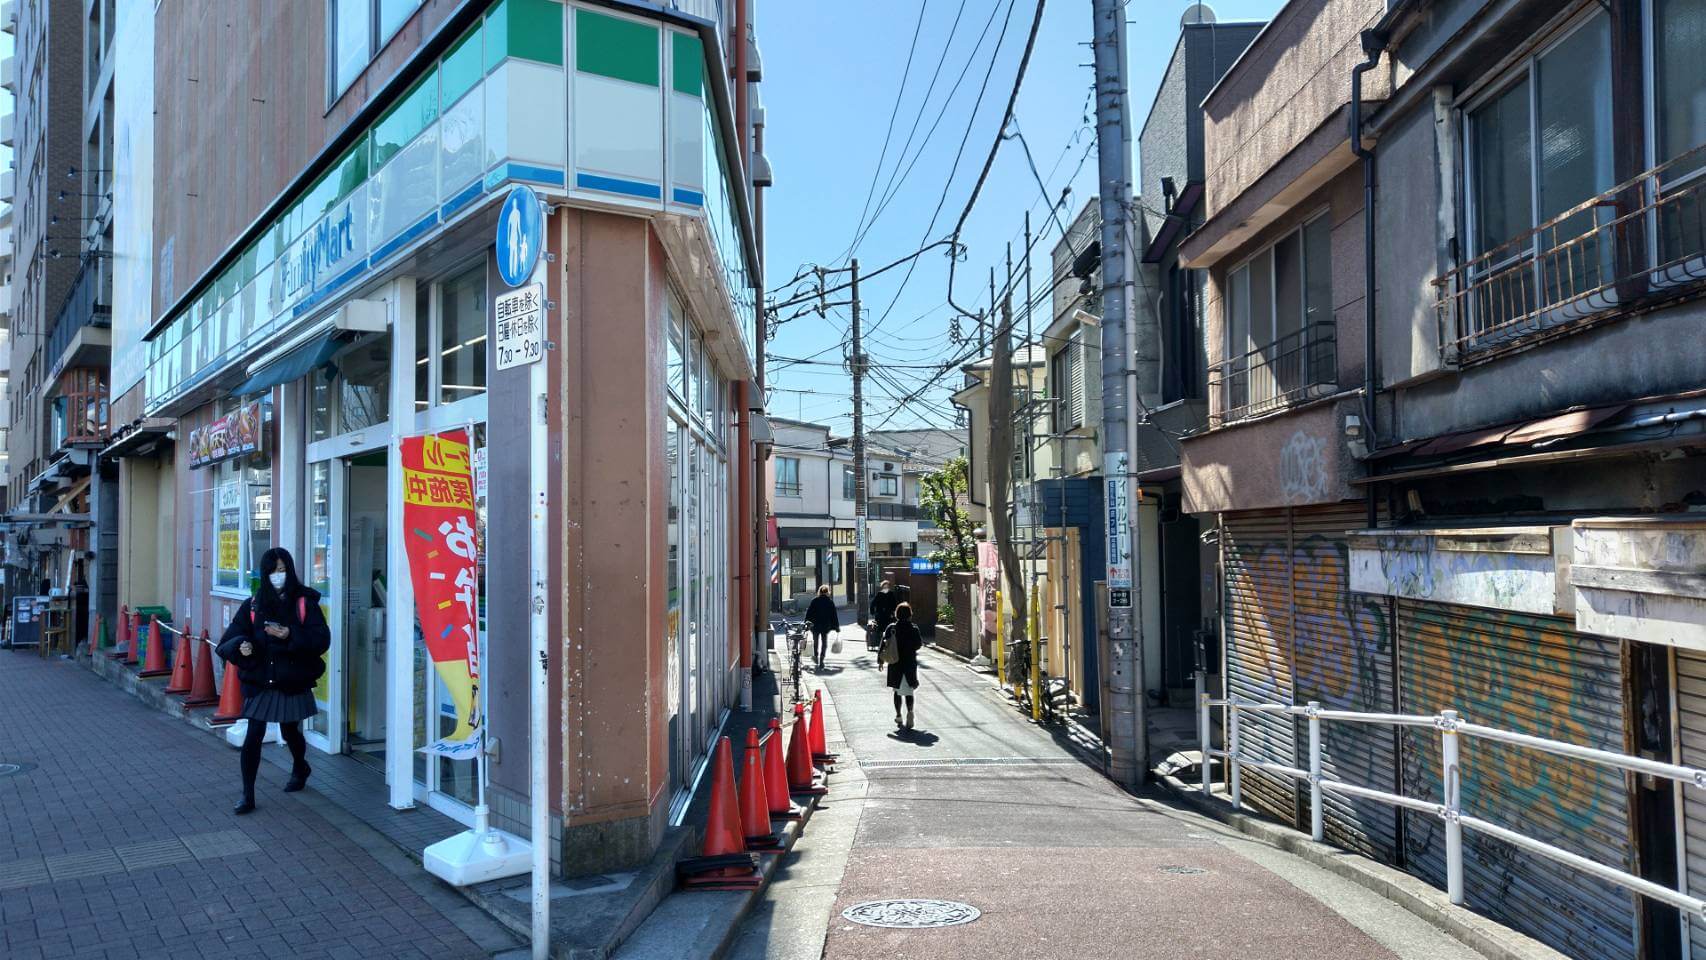 「ファミリーマート 東中野駅前店」の裏の道に入ります。「斎藤歯科」の青い看板や「カットハウスPELO」のサインポールが目印です。